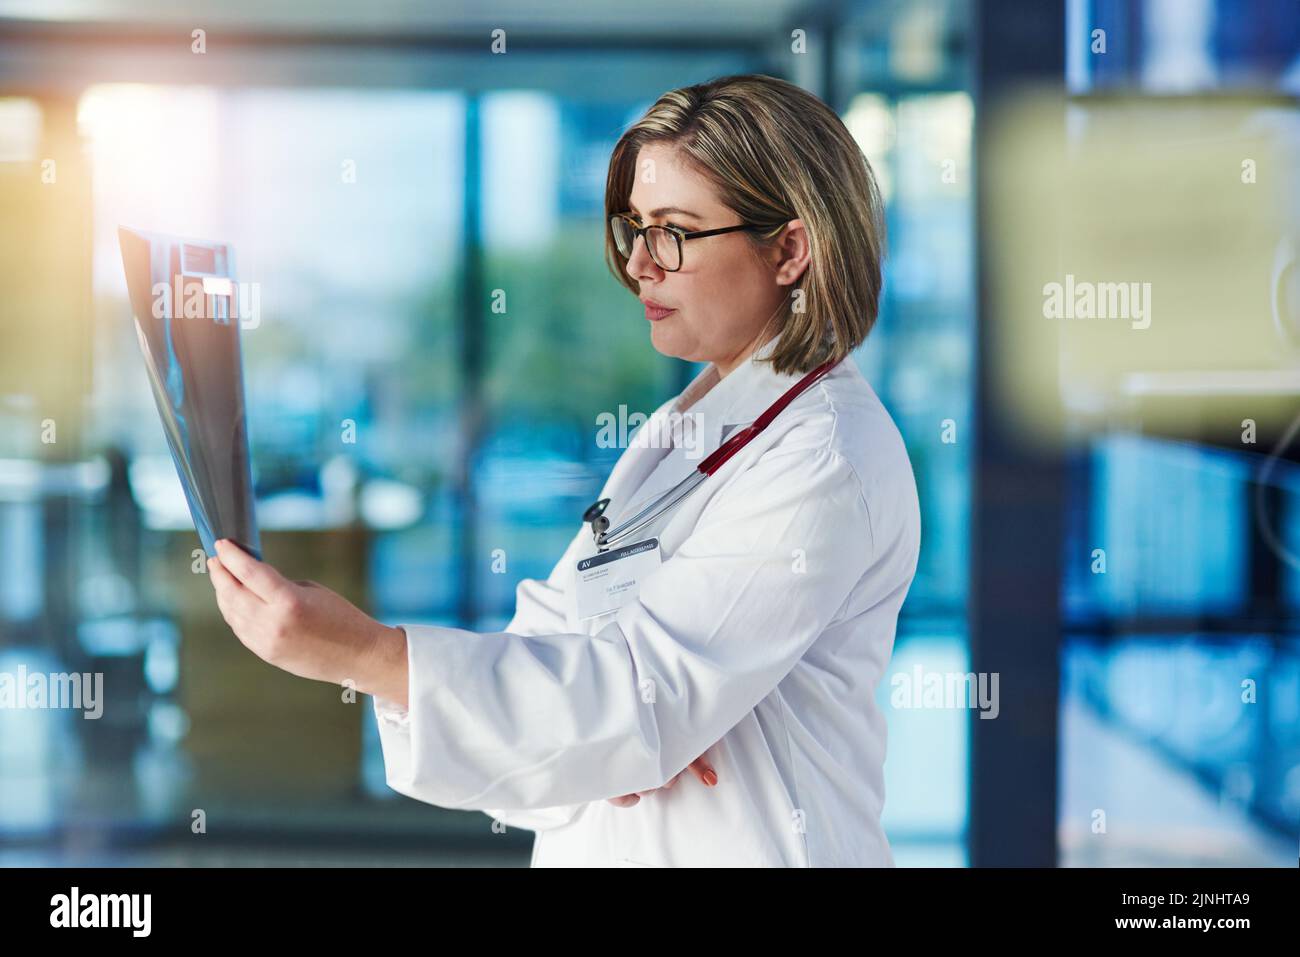 Il personale si è concentrato sulla ricerca di una procedura di trattamento adeguata. Un medico che analizza una radiografia in un ospedale. Foto Stock